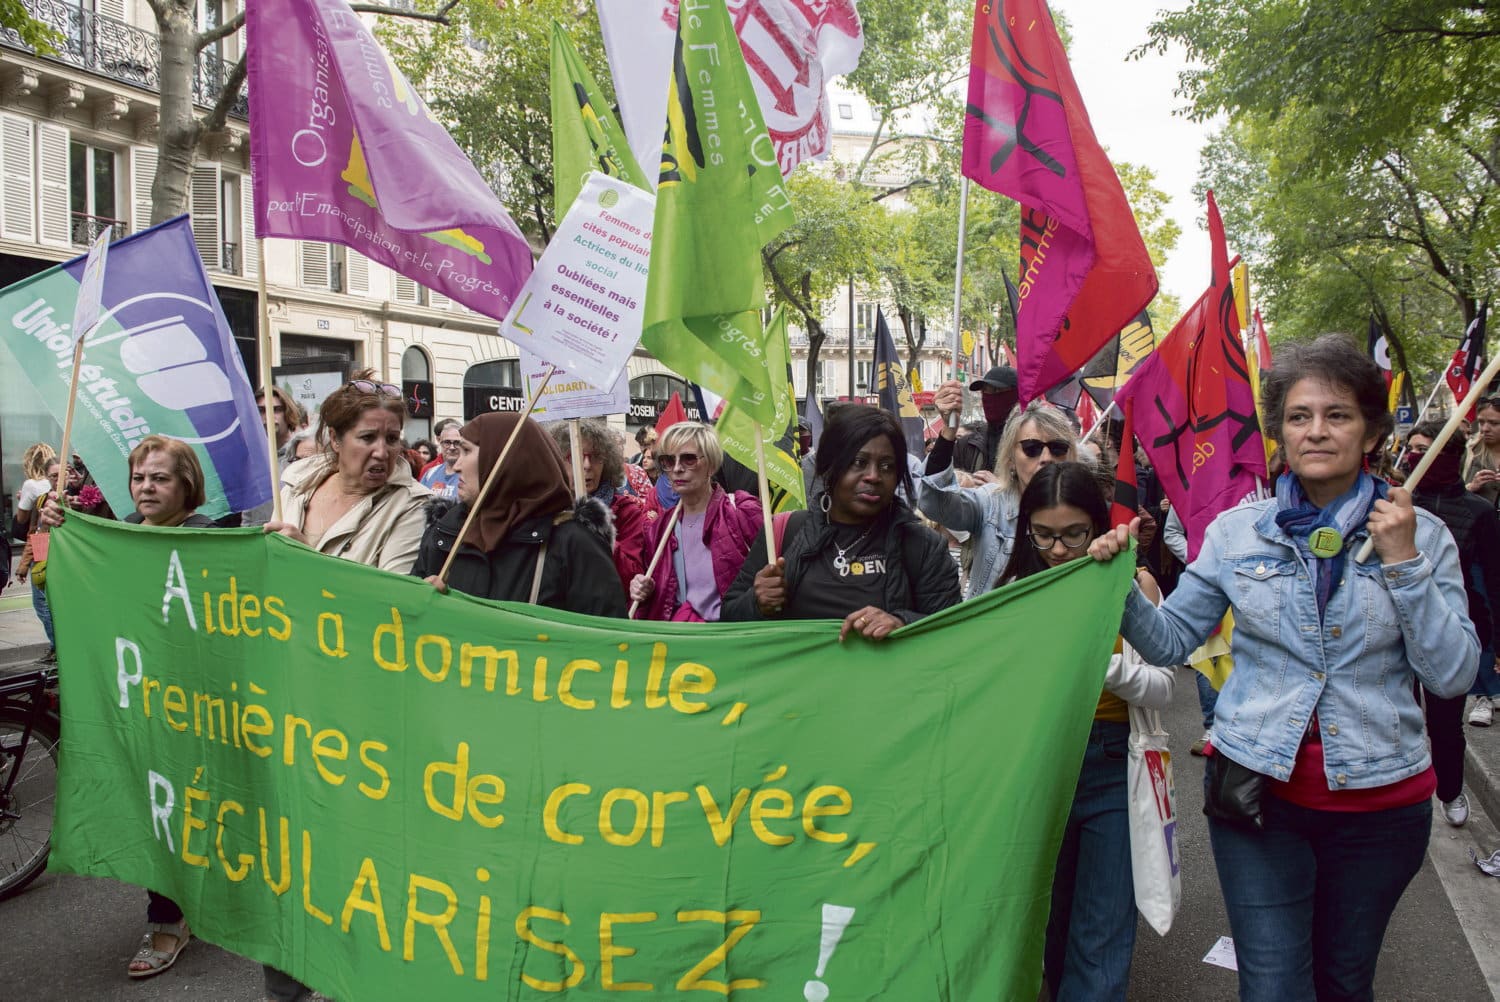 Hélène Bidard : « L’UE doit conditionner les aides publiques à l’égalité femmes hommes